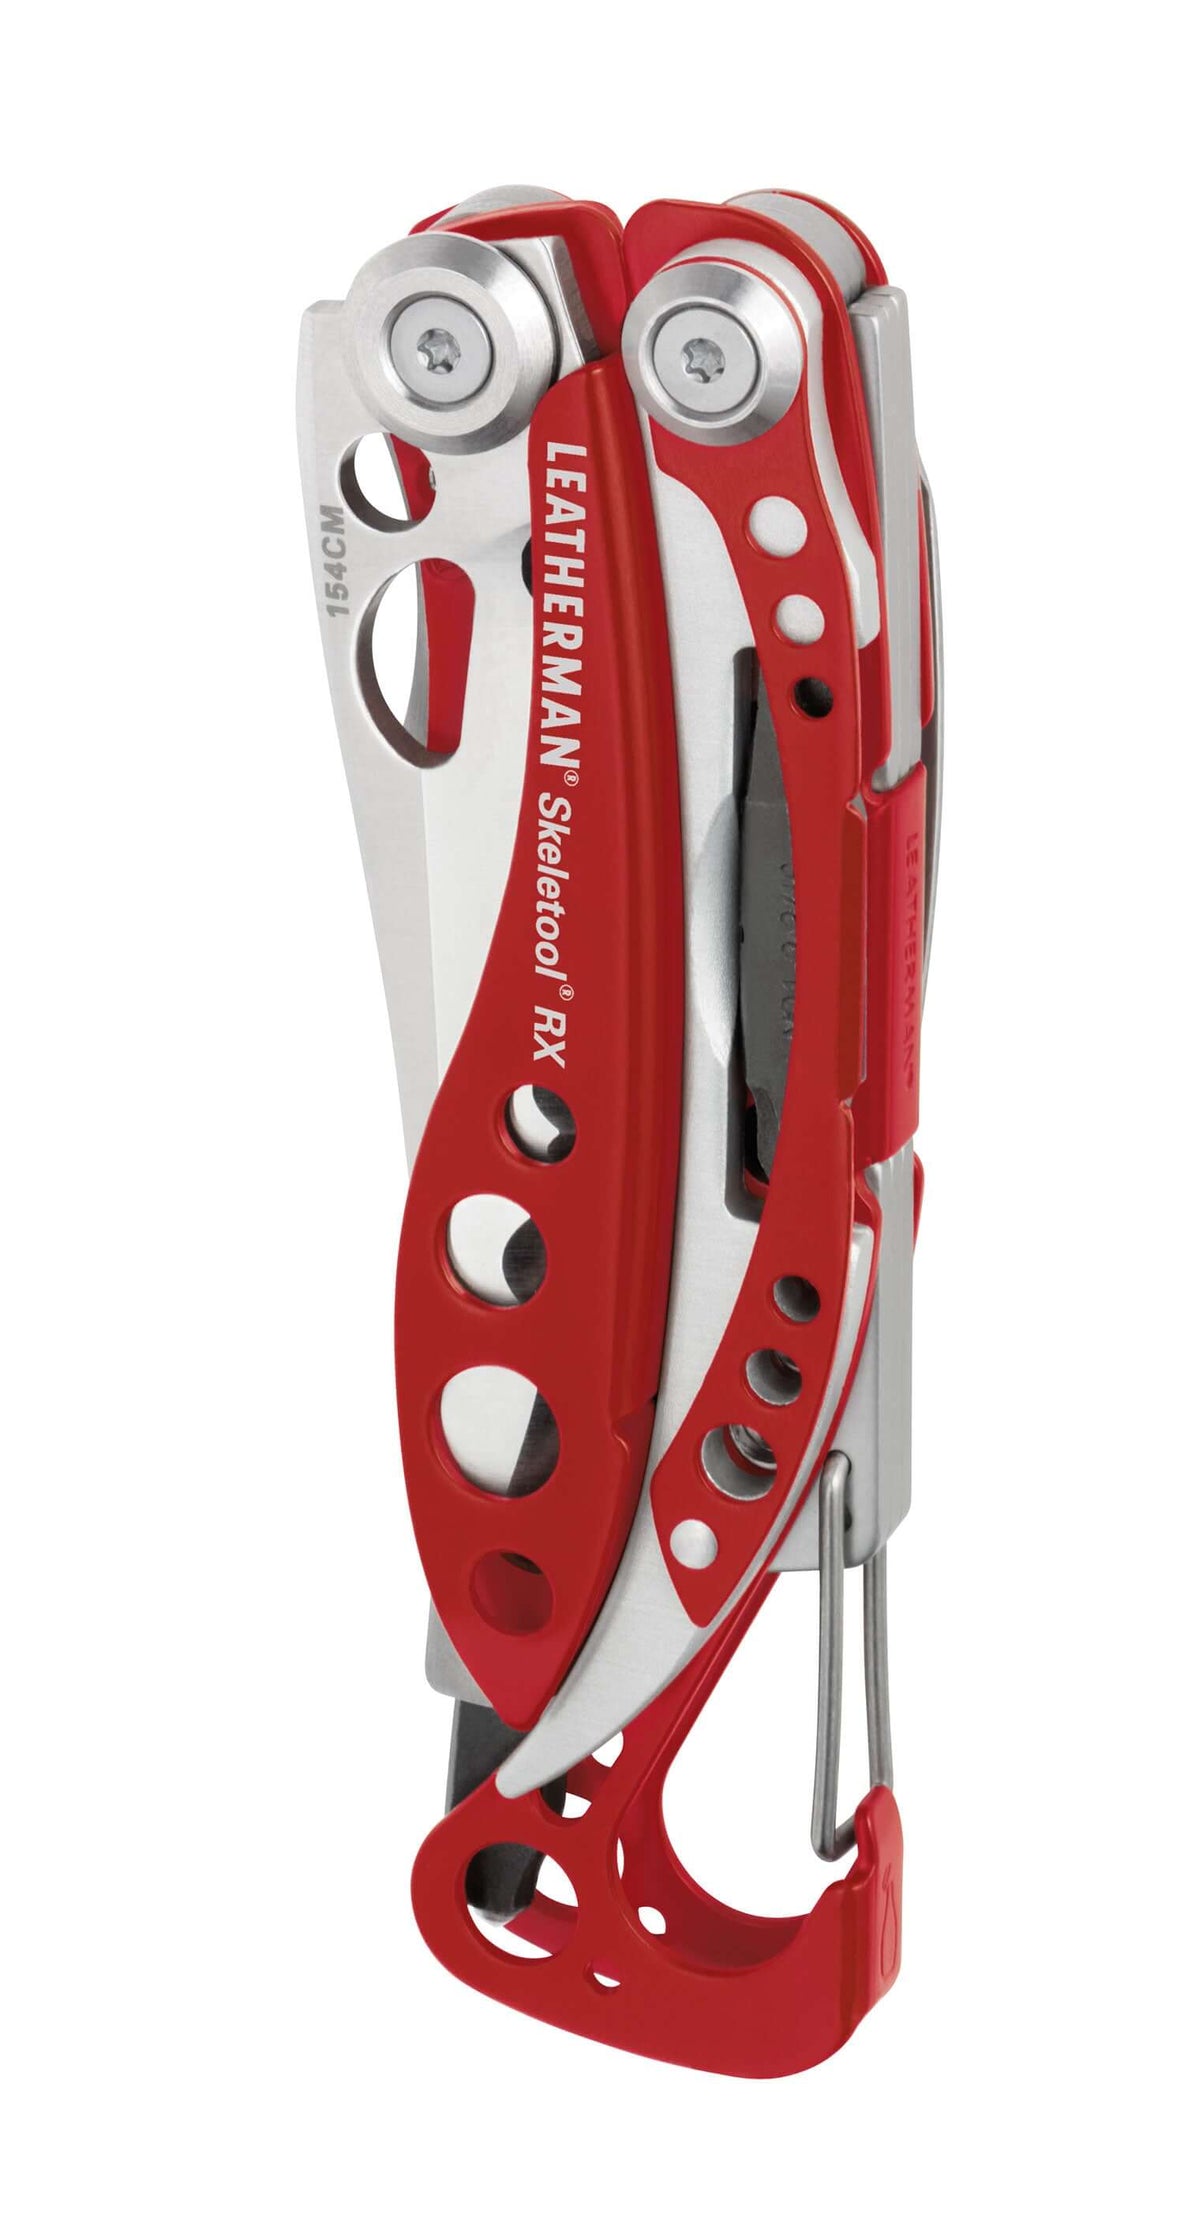 Closed Leatherman Skeletool® RX Emergency Multi-Tool | Cerakote Red